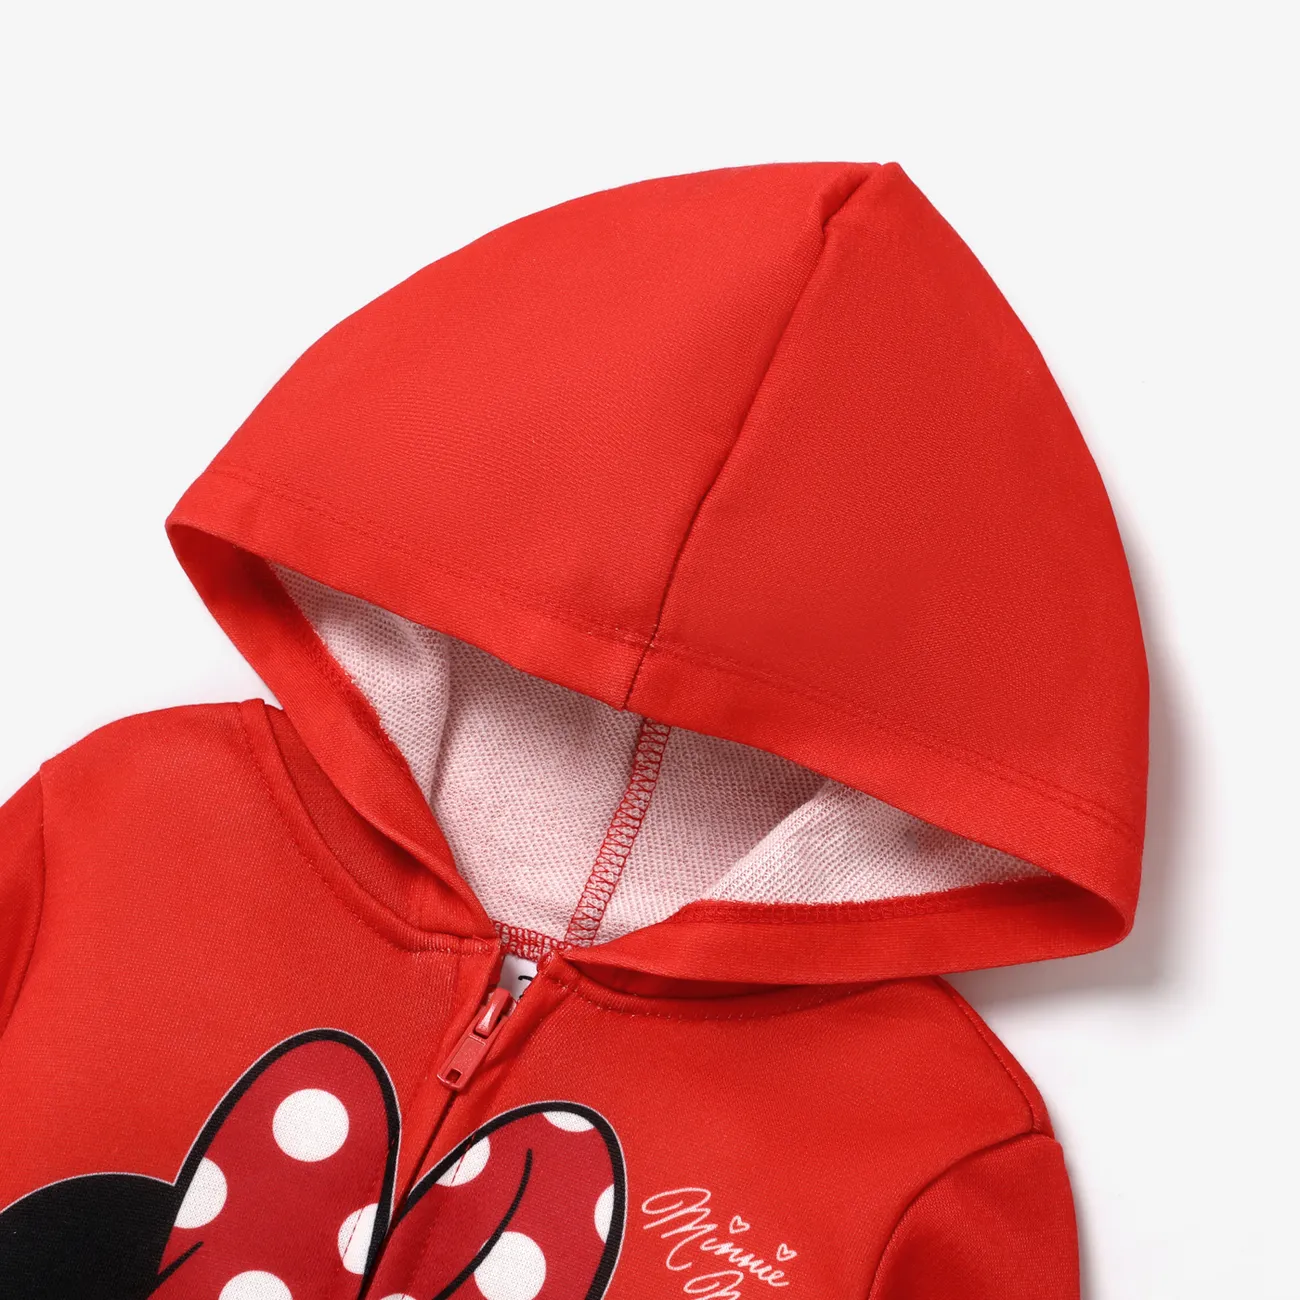 Disney Mickey and Friends 2 pièces Enfant en bas âge Fille Fermeture éclair Enfantin ensembles de vestes rouge 2 big image 1